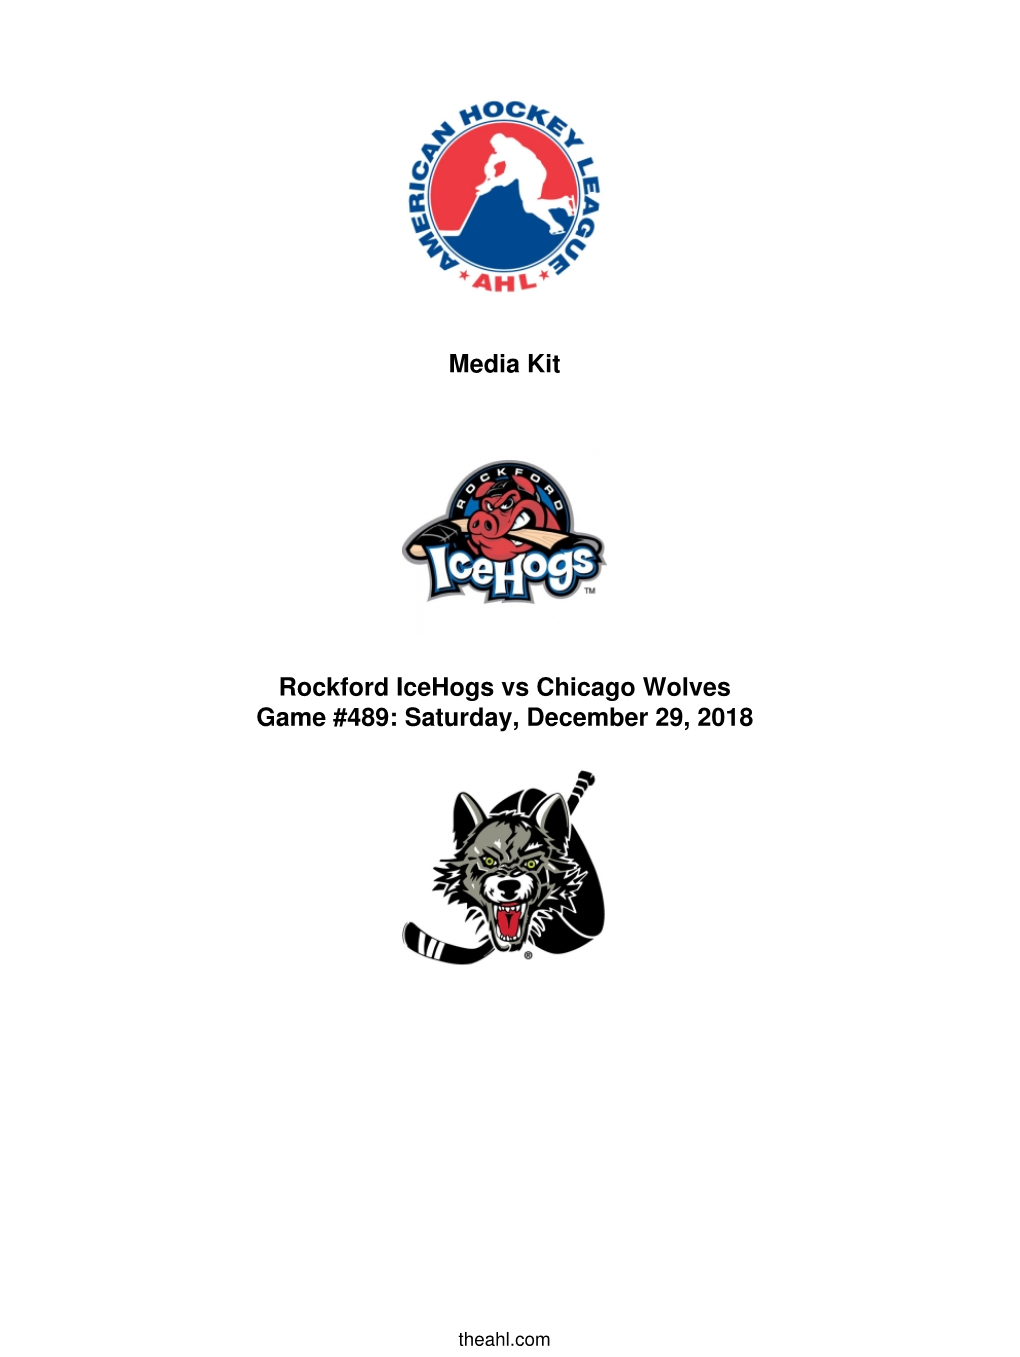 Media Kit Rockford Icehogs Vs Chicago Wolves Game #489